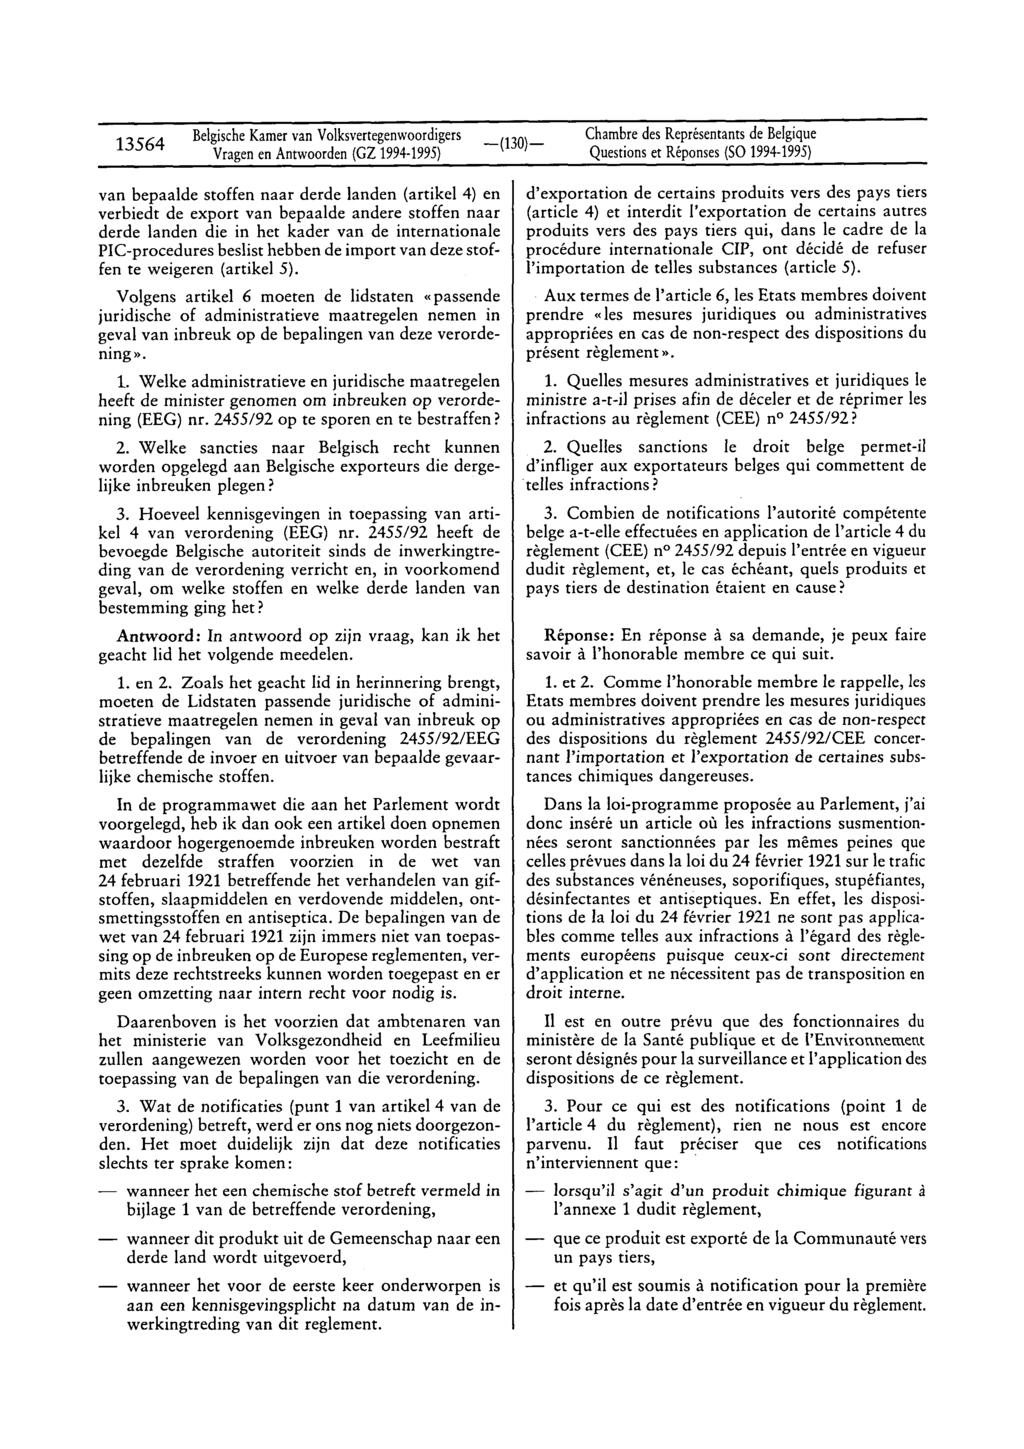 13564 BelgischeKamervan Volksvertegenwoordigers Vragenen Antwoorden(GZ 1994-1995) Questionset Réponses(SO 1994-1995) van bepaalde stoffen naar derde landen (artikel 4) en verbiedt de export van